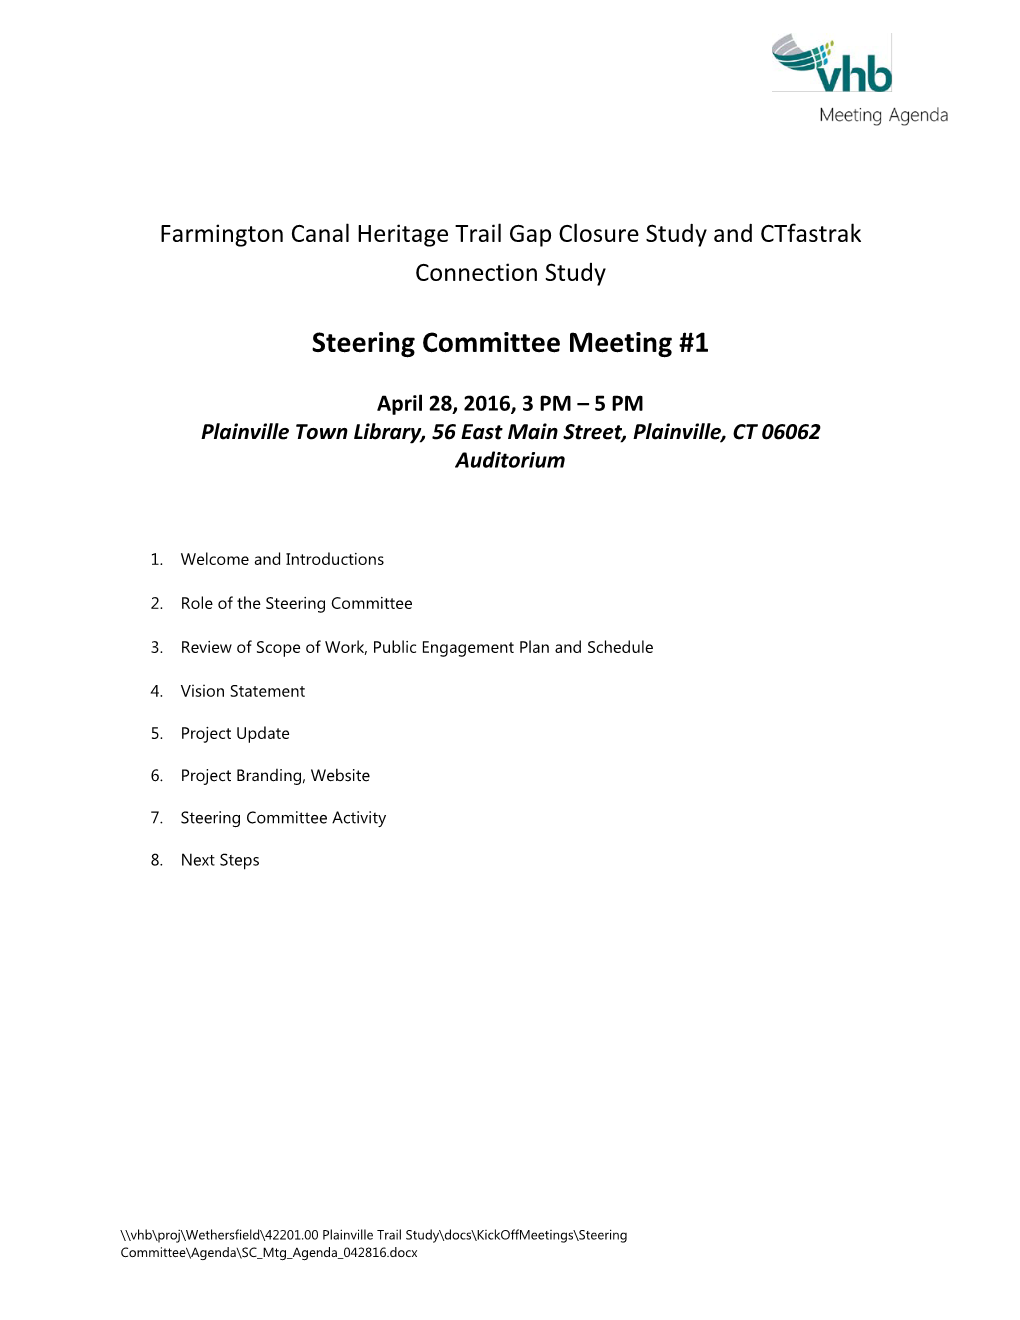 Steering Committee Meeting #1